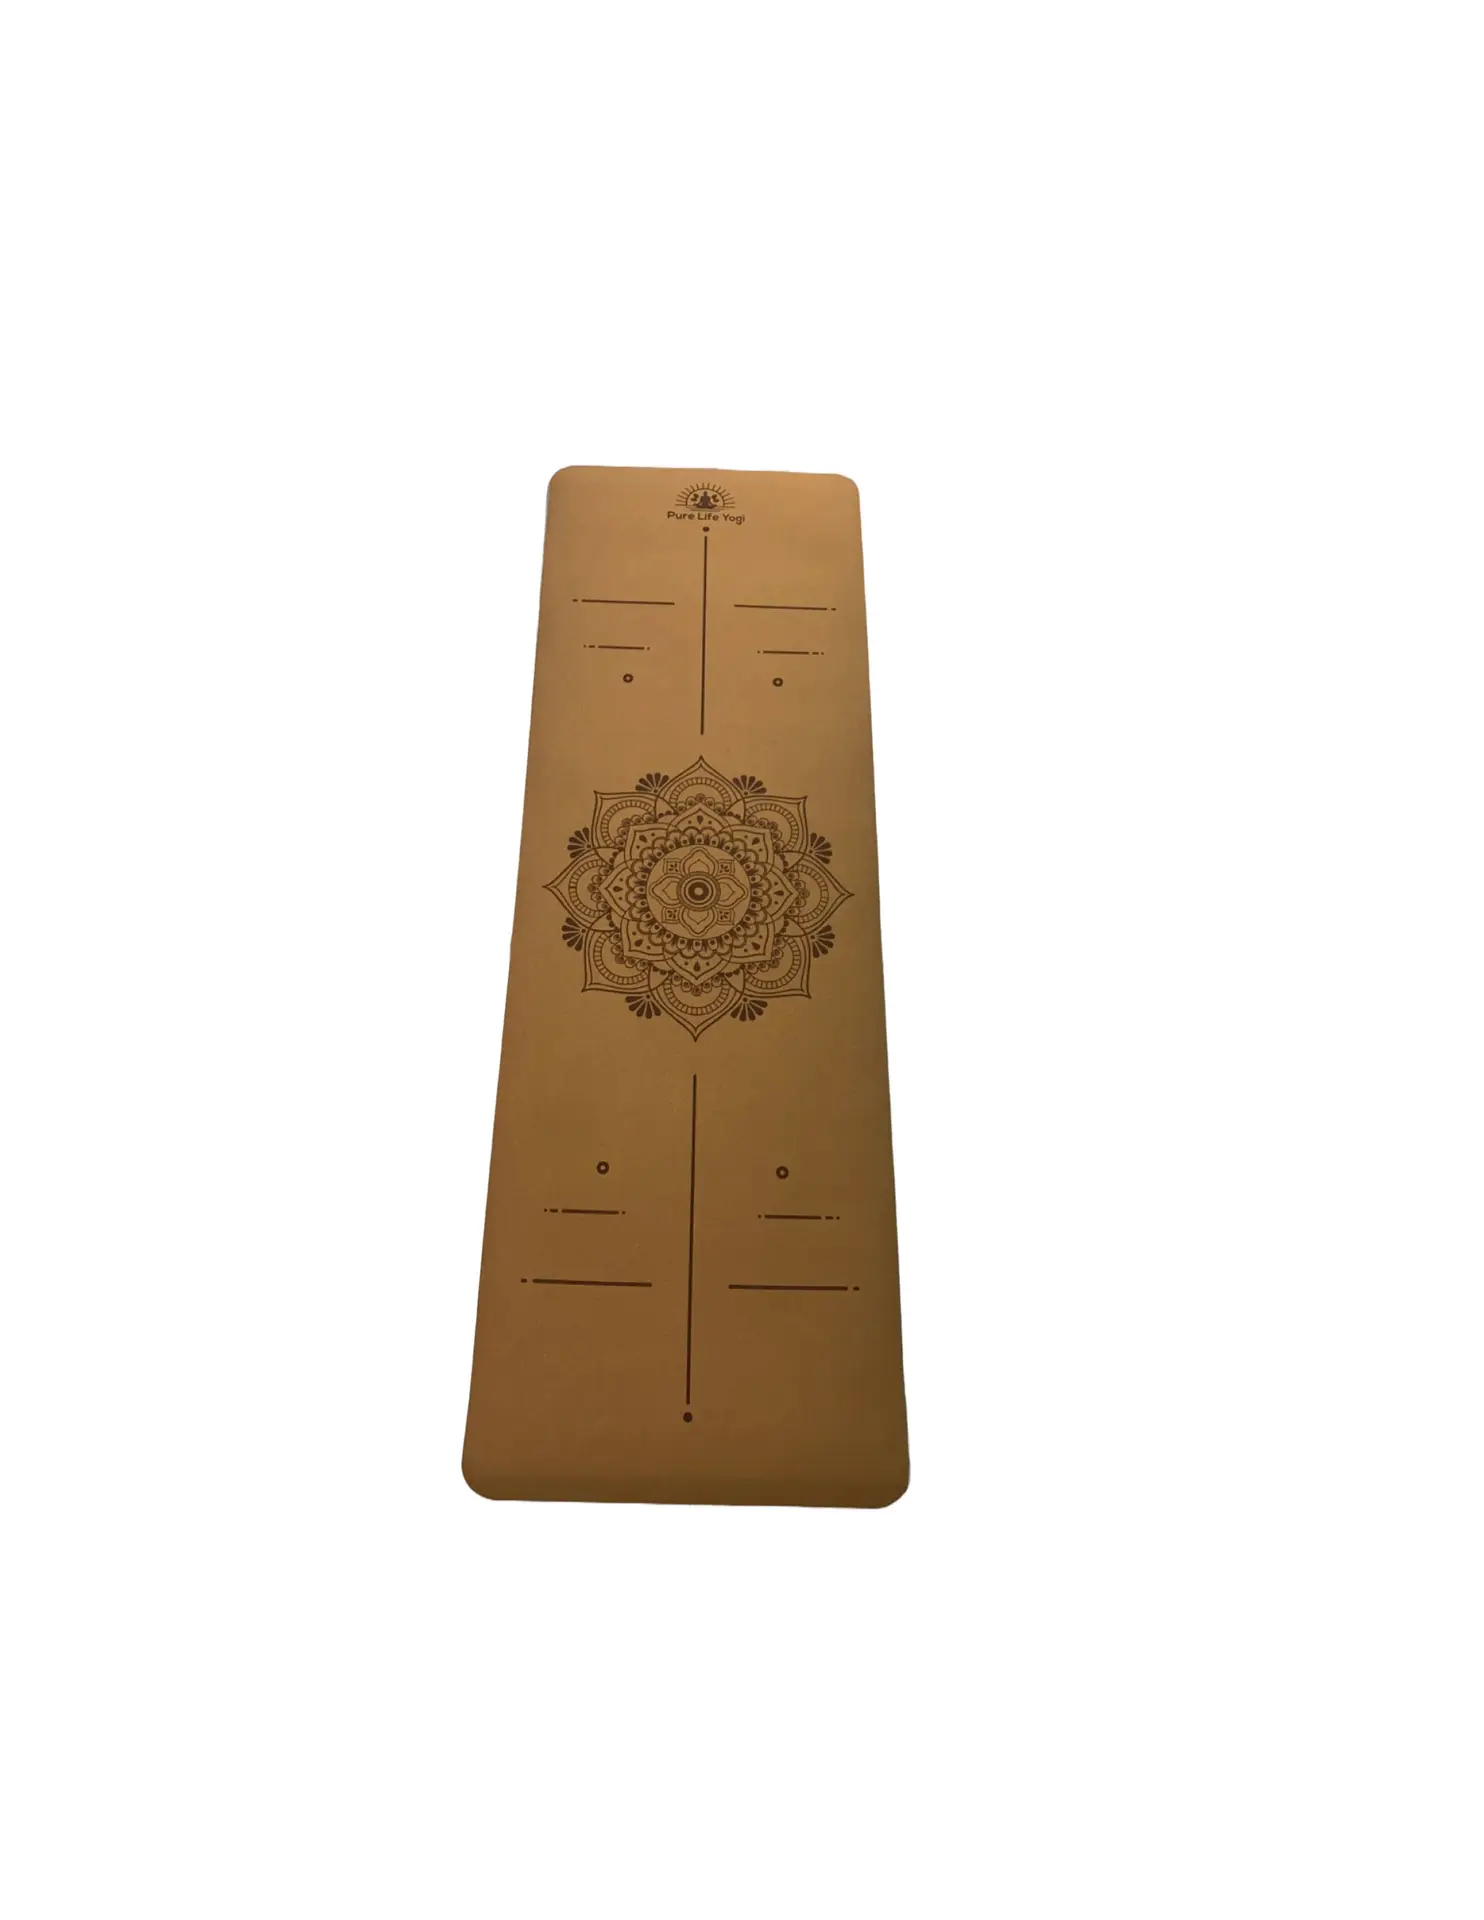 Cork Yoga Mat by Shakti Warrior 100% Natural & Non-toxic Non Slip Durable 